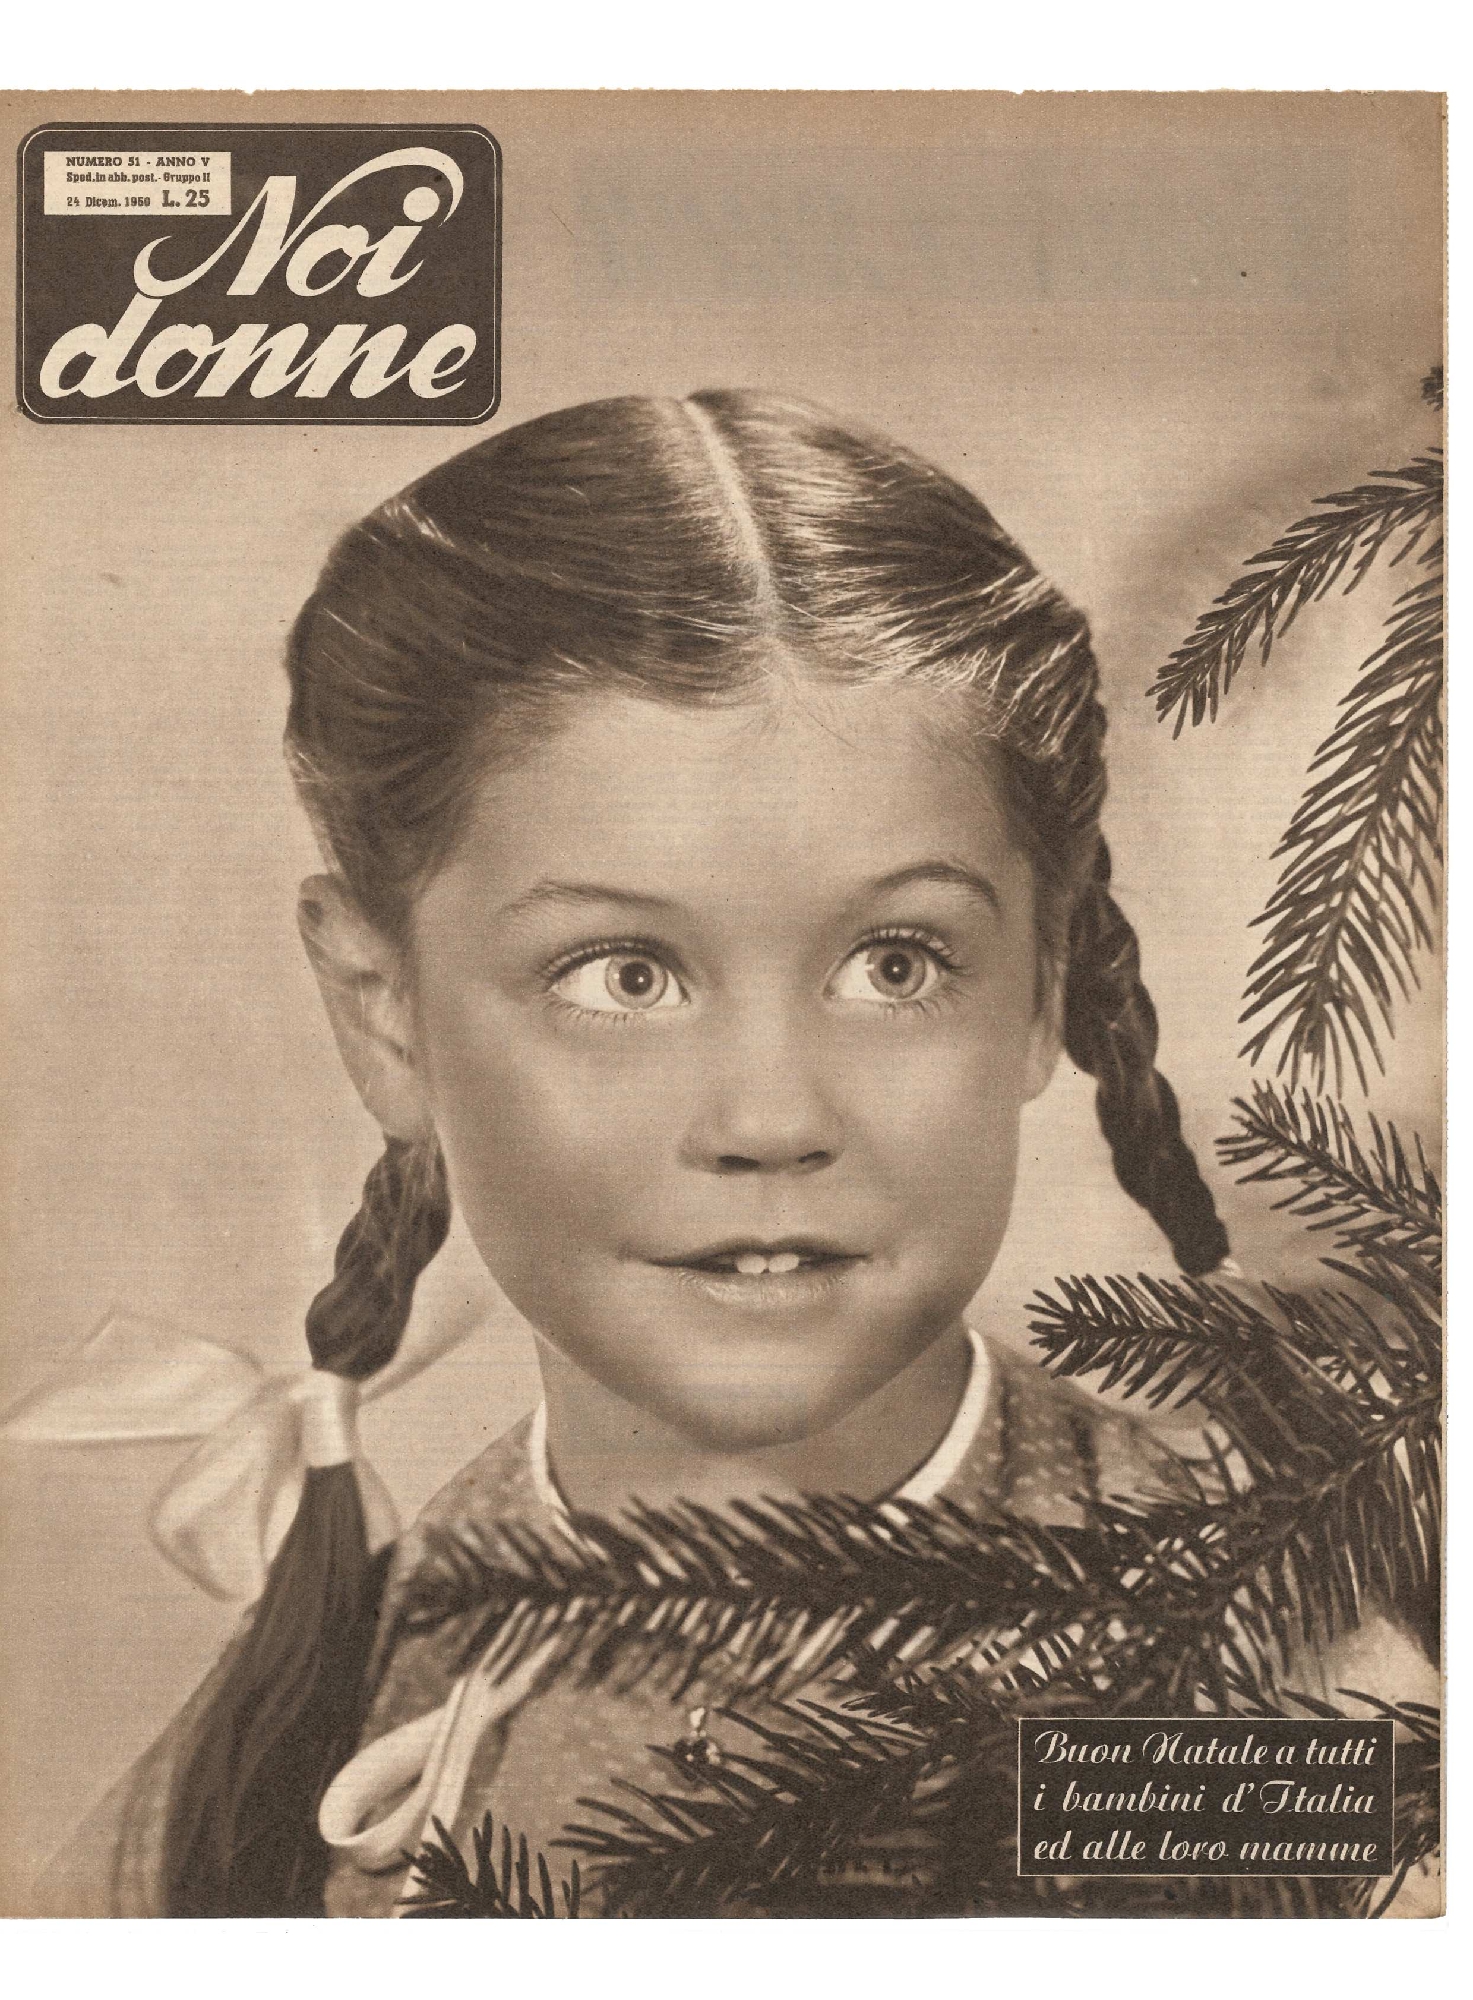 Immagini Natalizie Anni 50.Noi Donne N 51 Del 1950